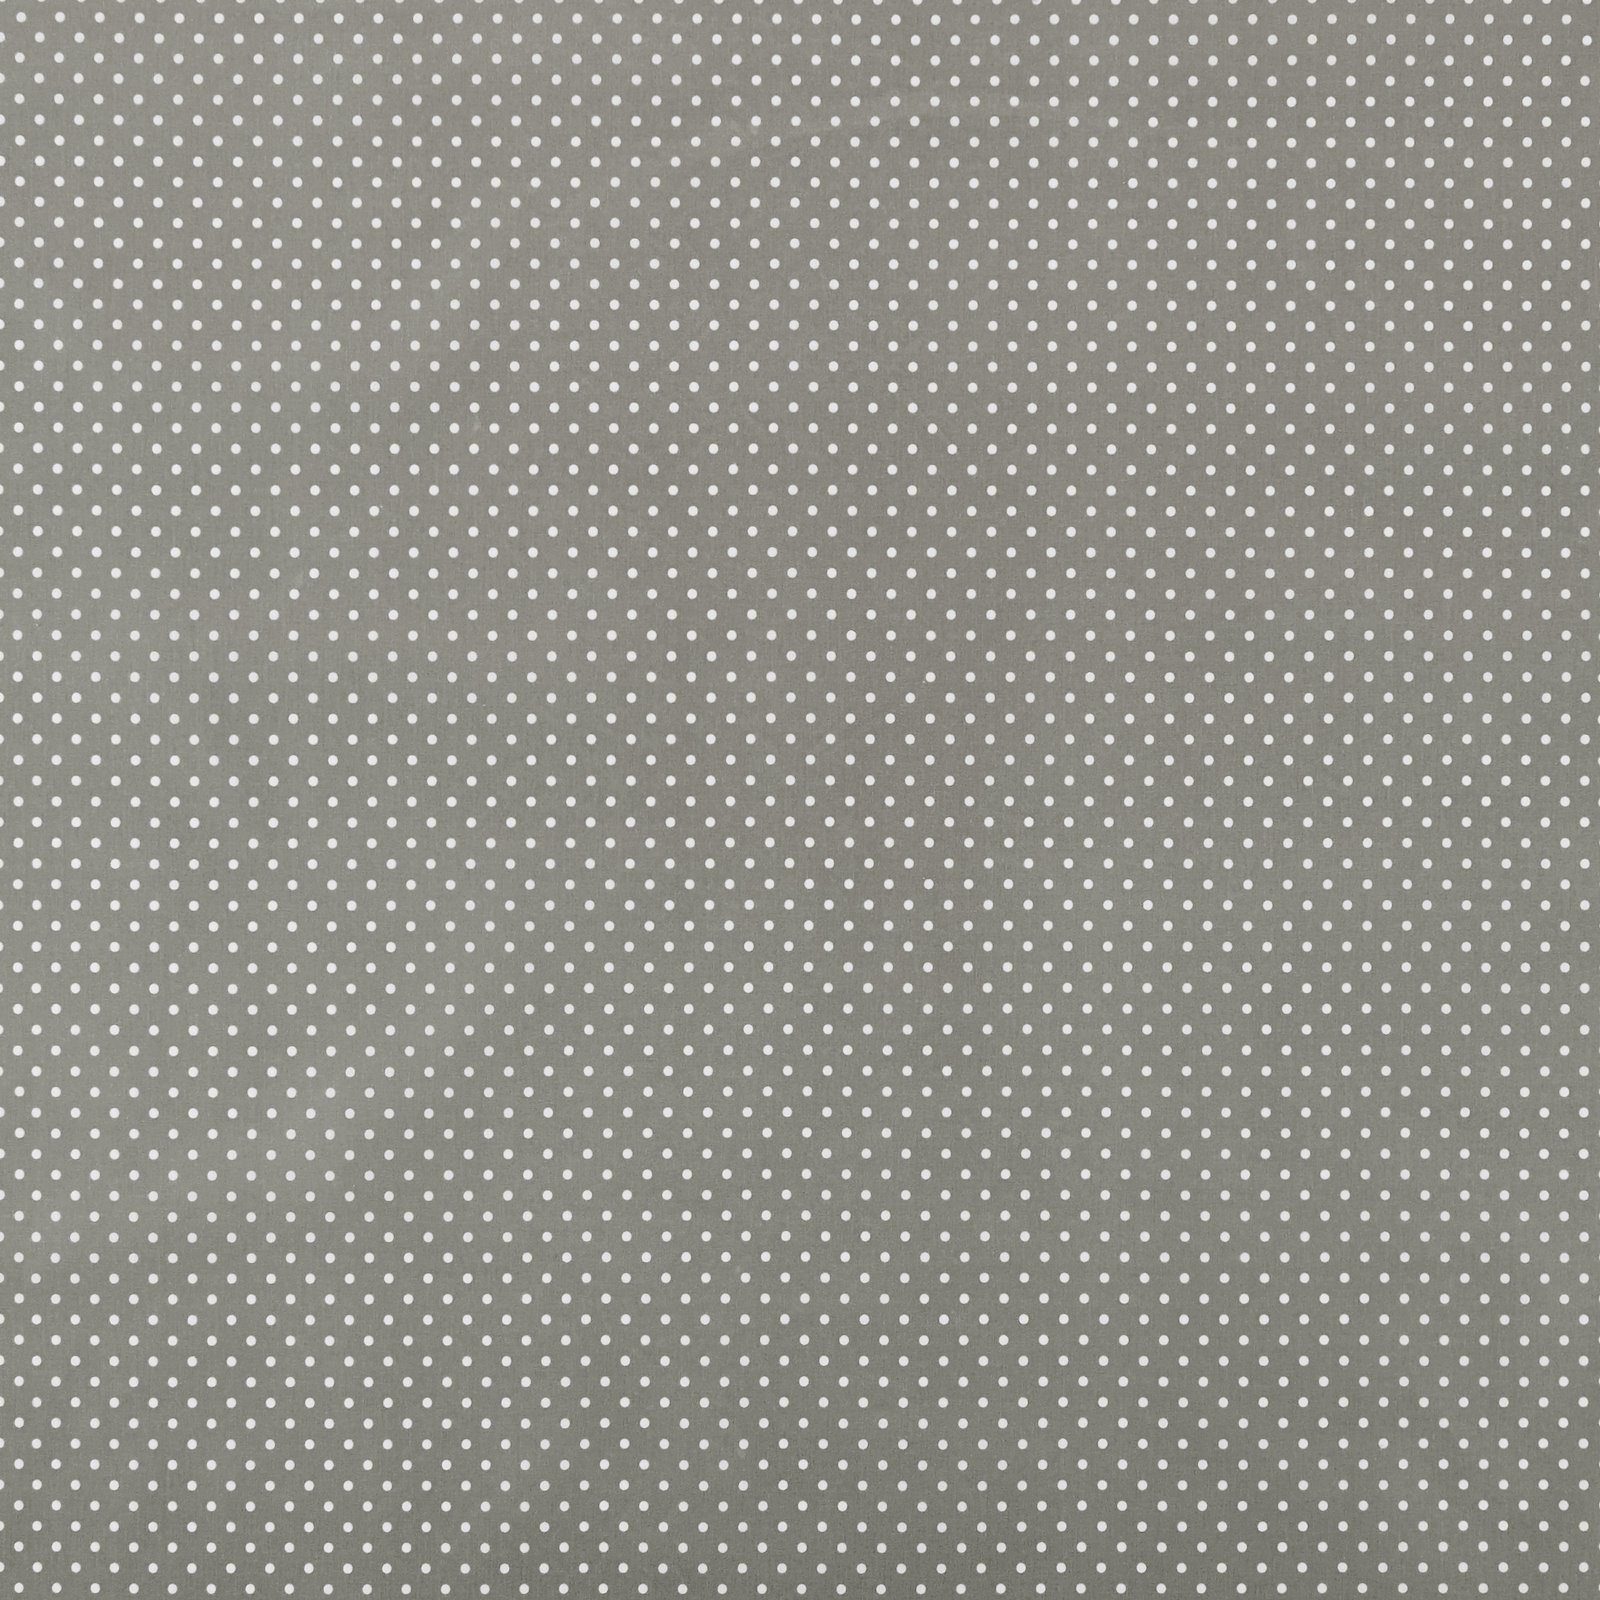 Textilwachstuch m/Punkten Grau/Weiß 860485_pack_sp